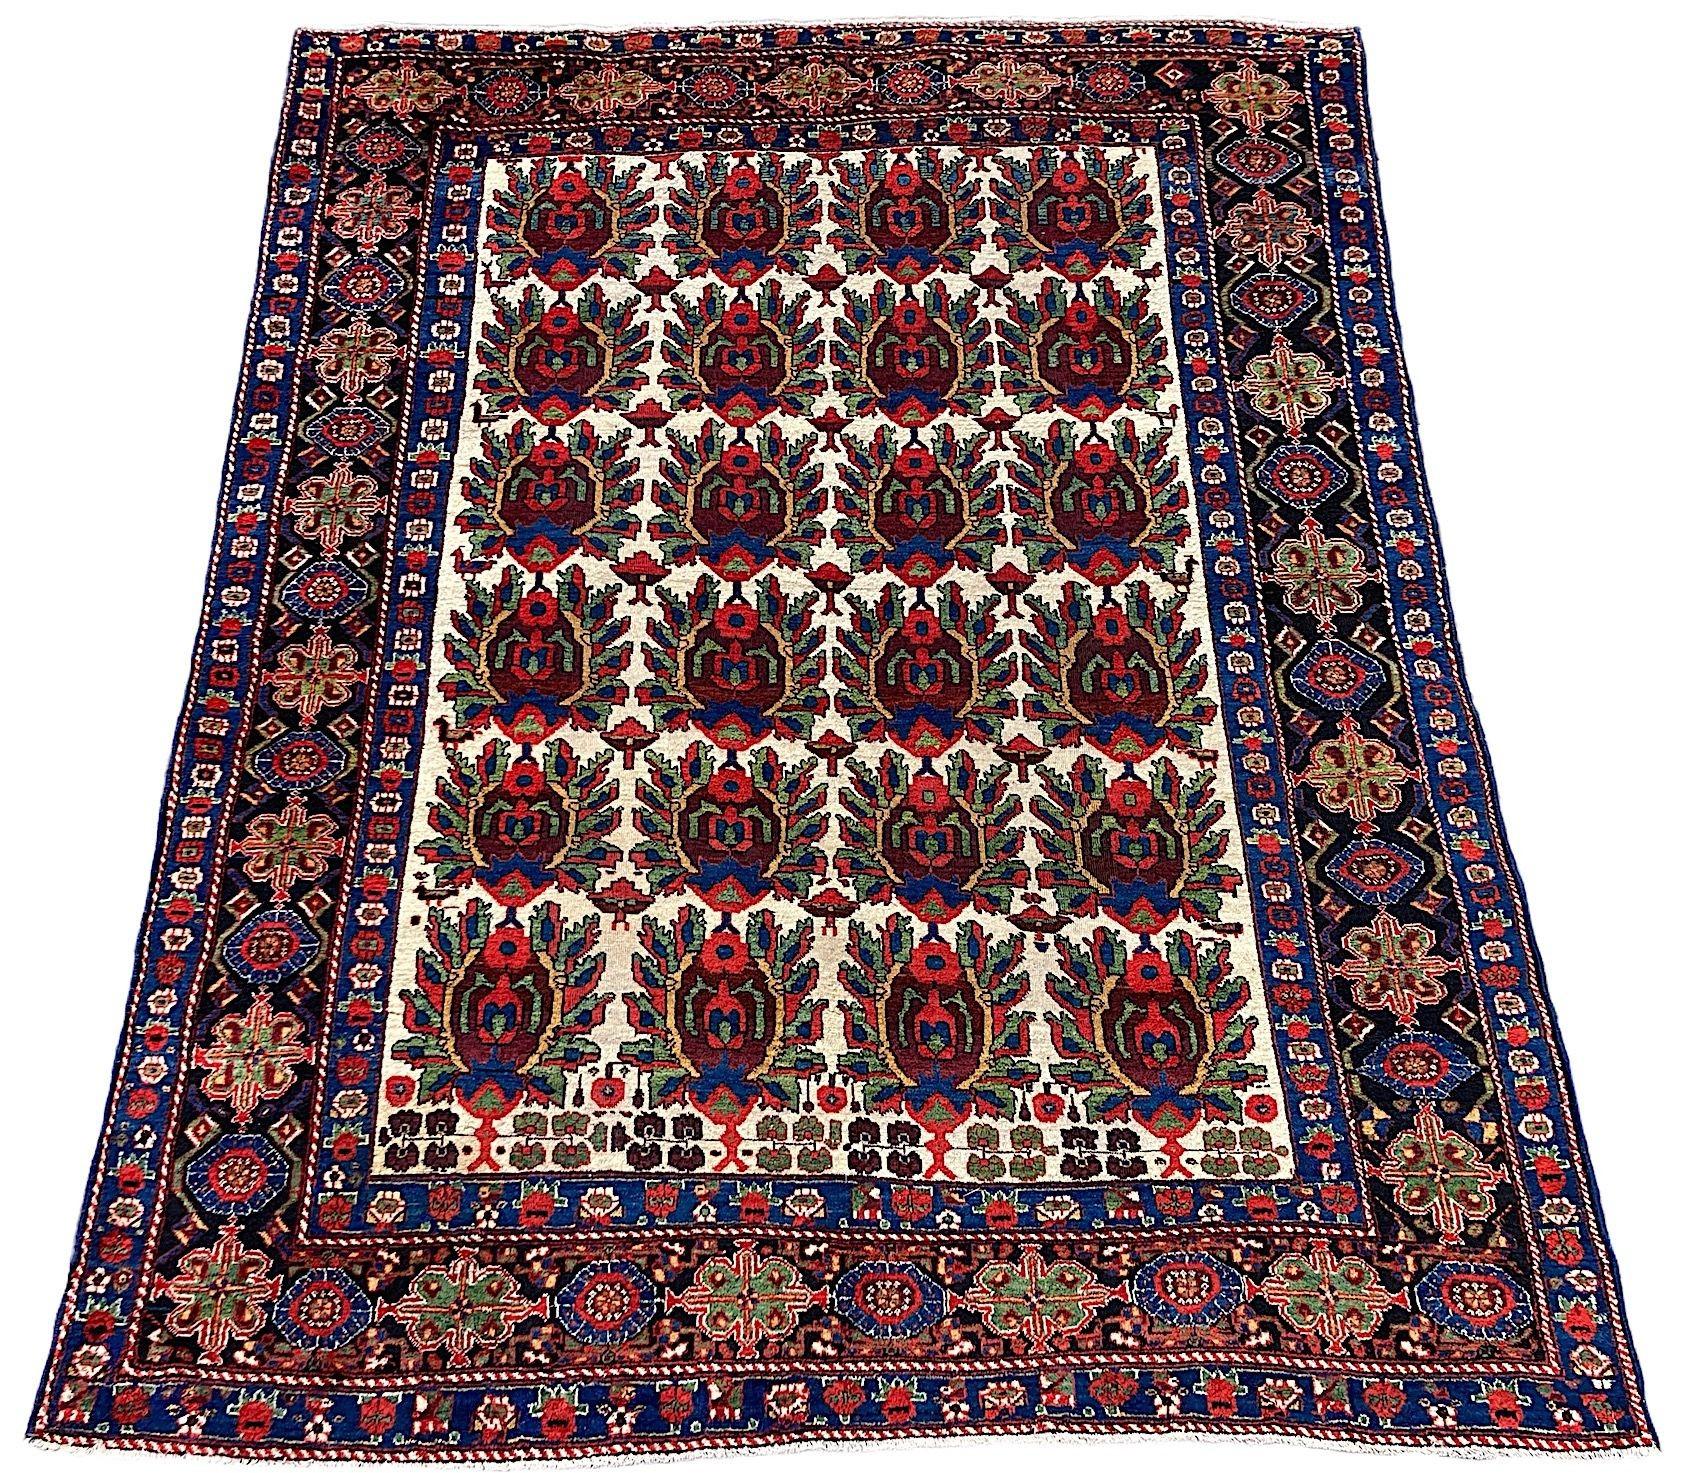 Un fabuleux tapis ancien Afshar, tissé à la main vers 1900. Le tapis présente un motif de bouclier répété sur un champ ivoire inhabituel entouré d'une bordure indigo profonde. Finement tissé avec de la laine douce et veloutée et des couleurs